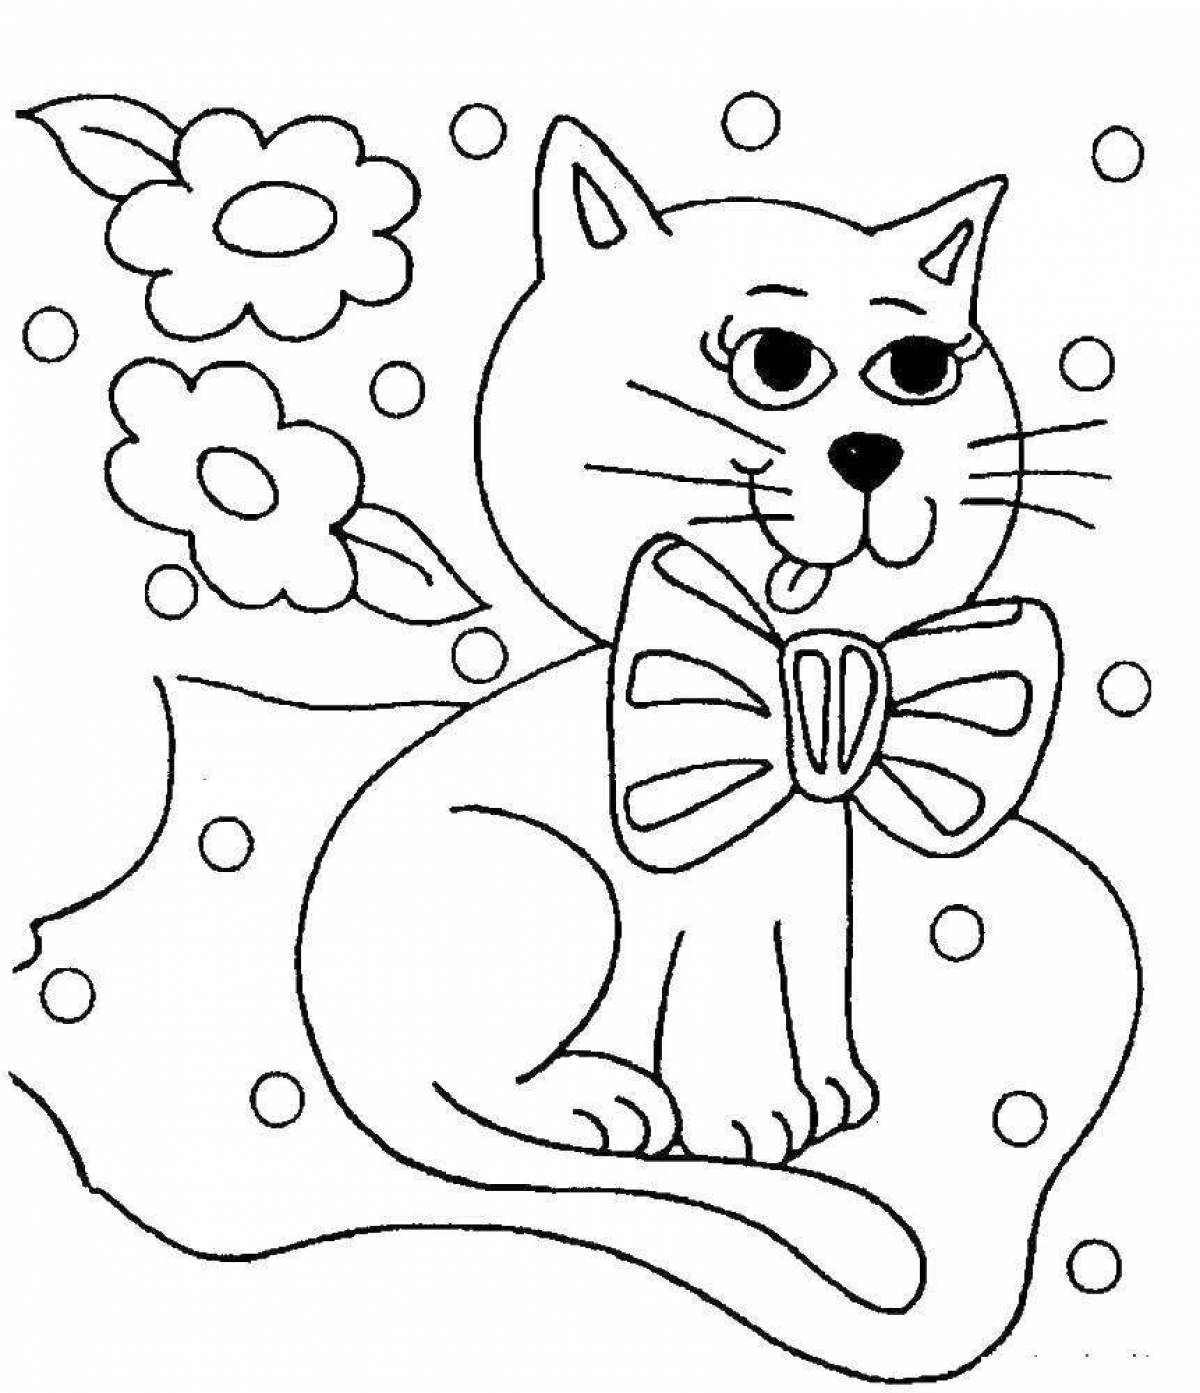 Fancy kitten coloring page